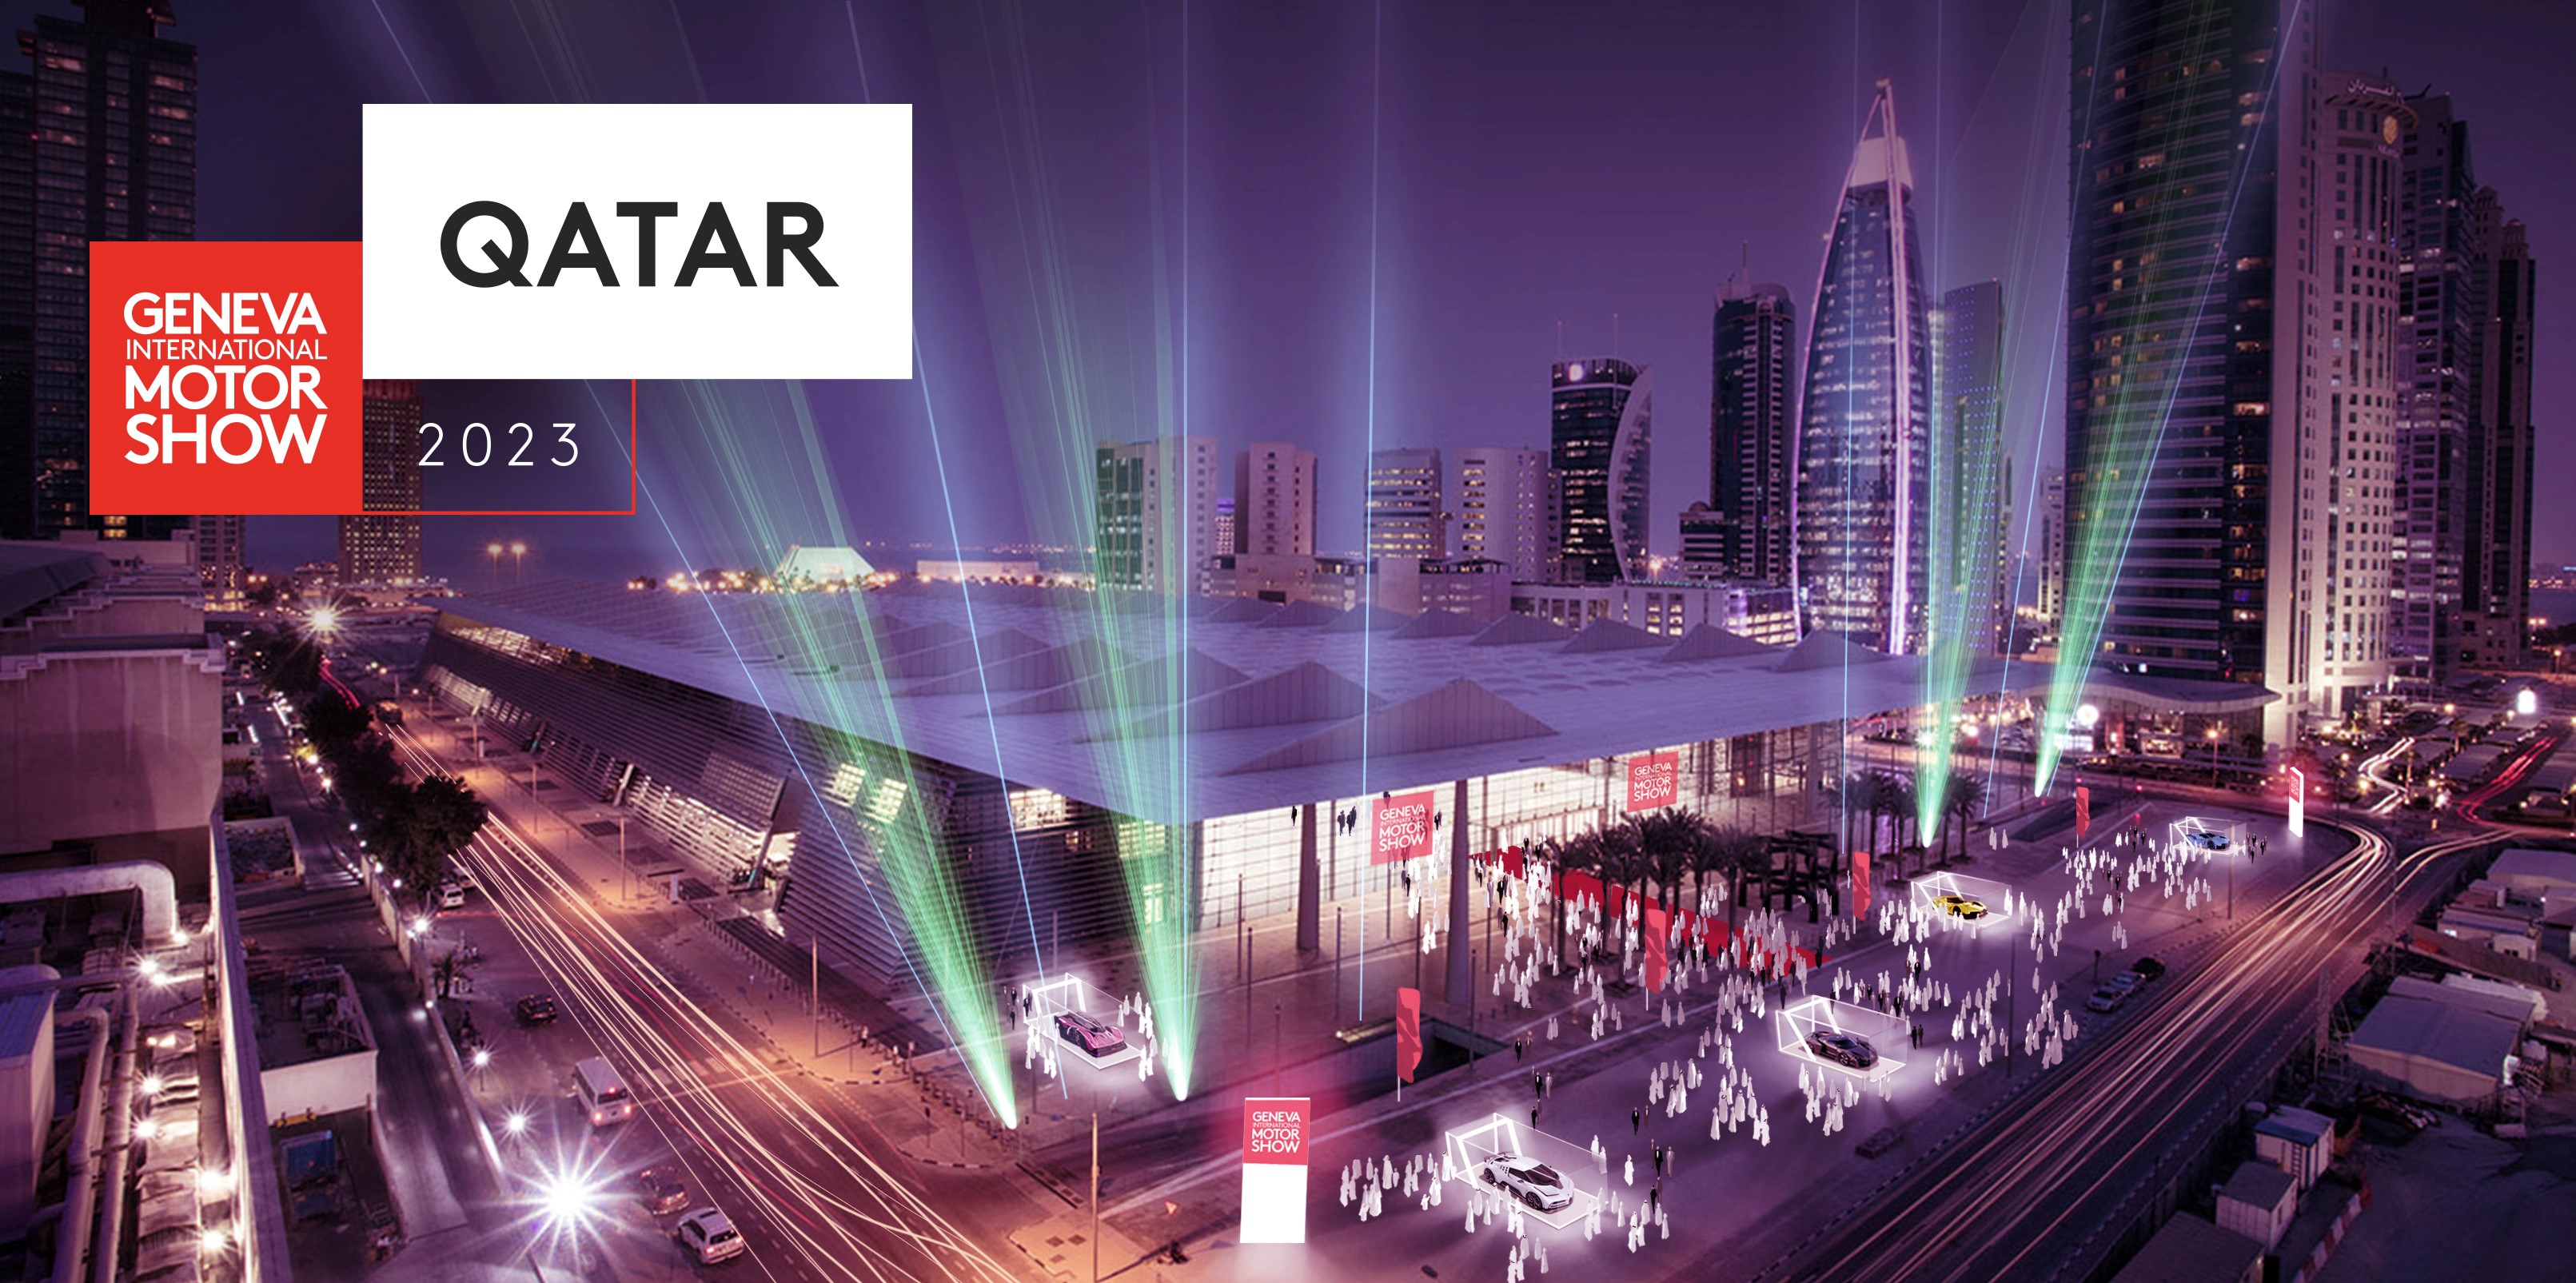 معرض قطر - جنيف الدولي للسيارات ينطلق في الفترة من 5 إلى 14 أكتوبر 2023